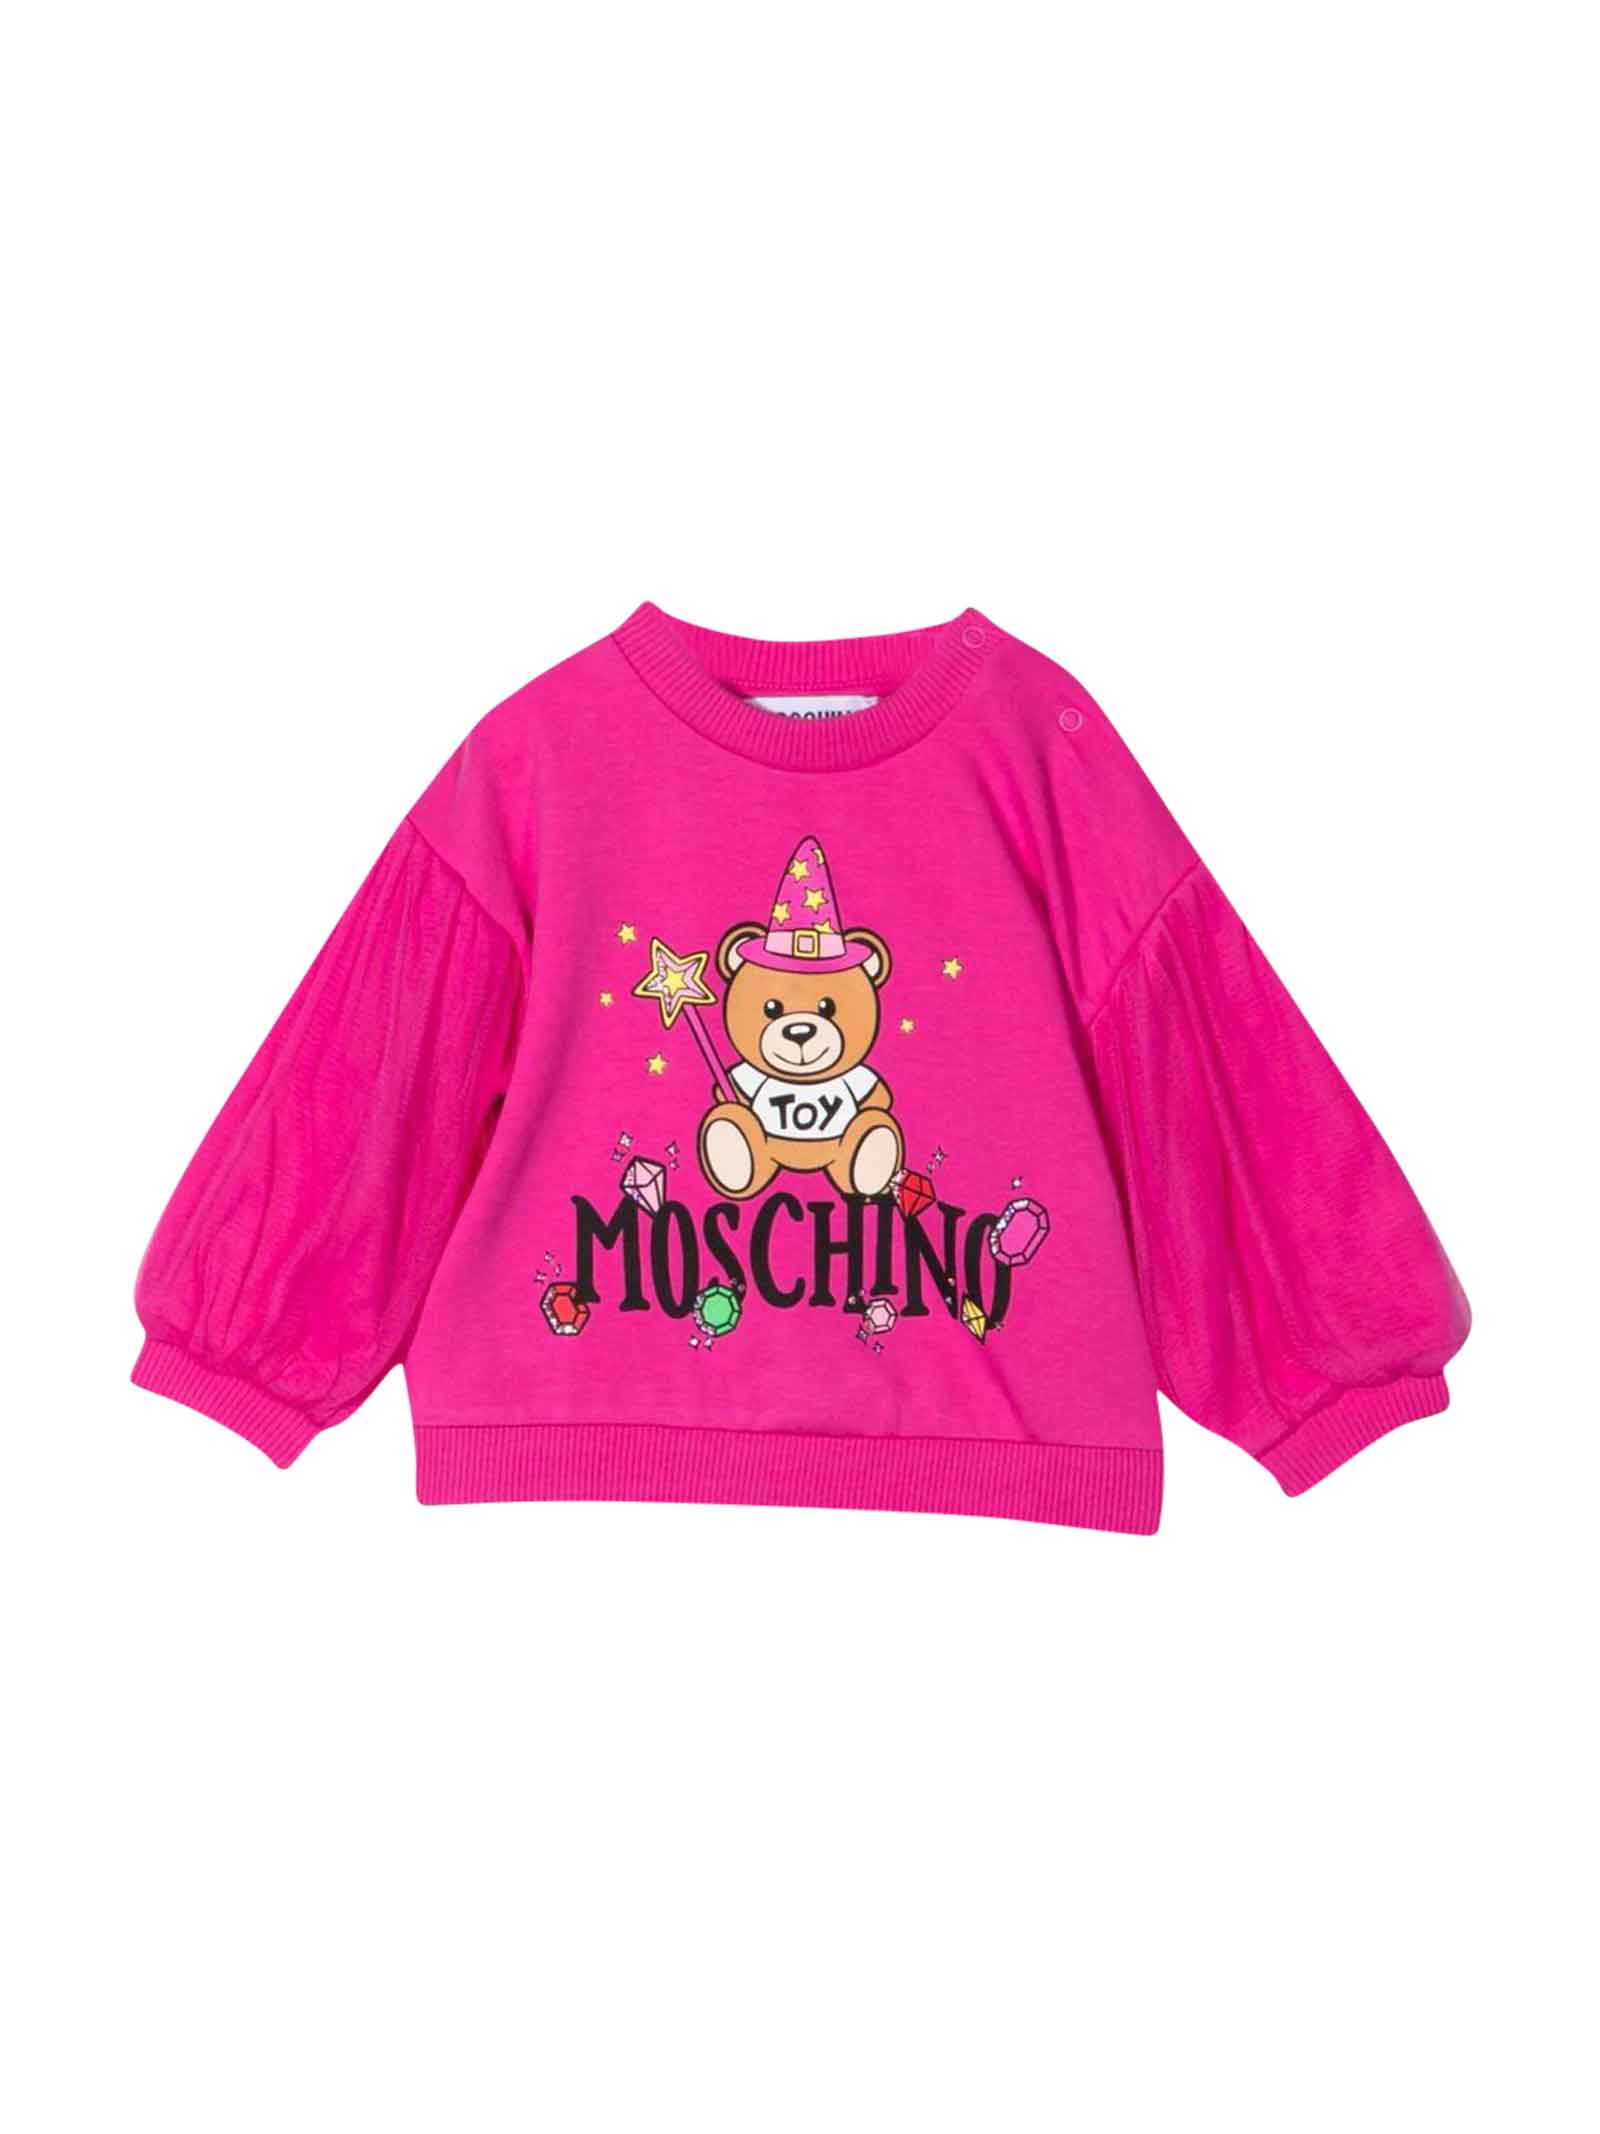 Moschino Fuchsia Sweatshirt